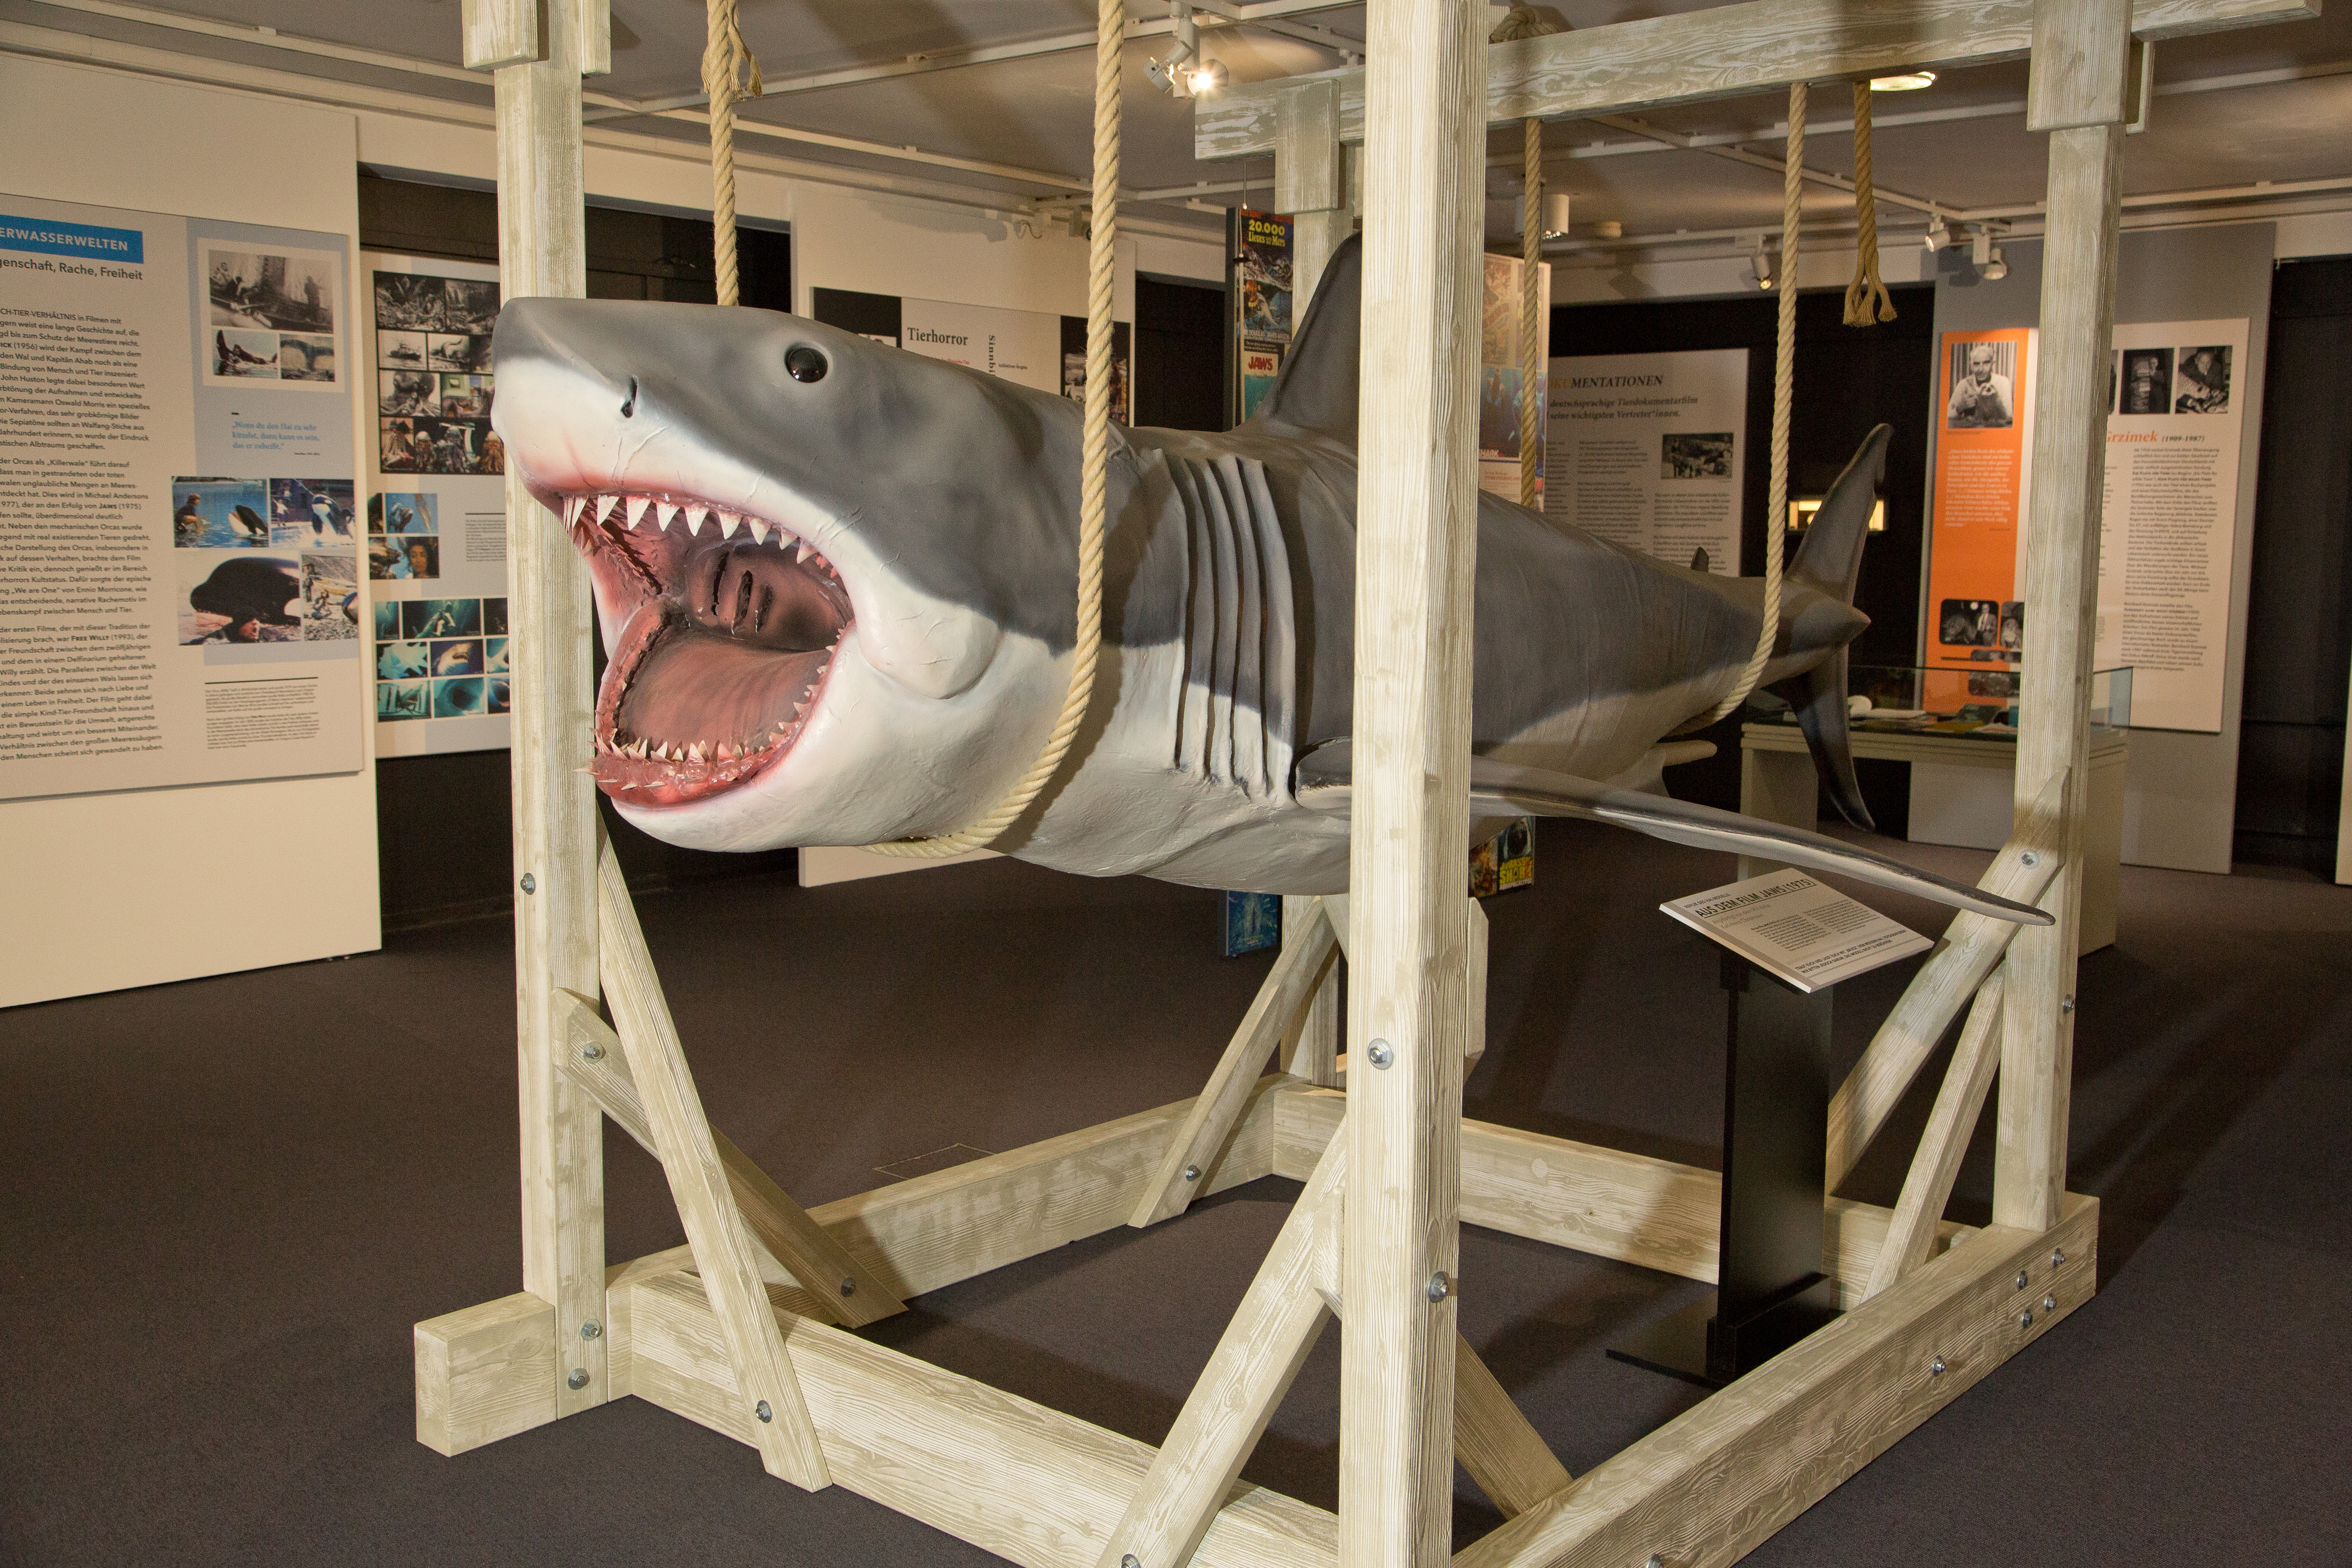 Exponat im Filmmuseum: Replik des Hai-Modells aus dem Film "Der weiße Hai", angefertigt von dem VFX-Künstler Karl-Heinz Christmann © Filmmuseum Düsseldorf/Ines Schweizer 